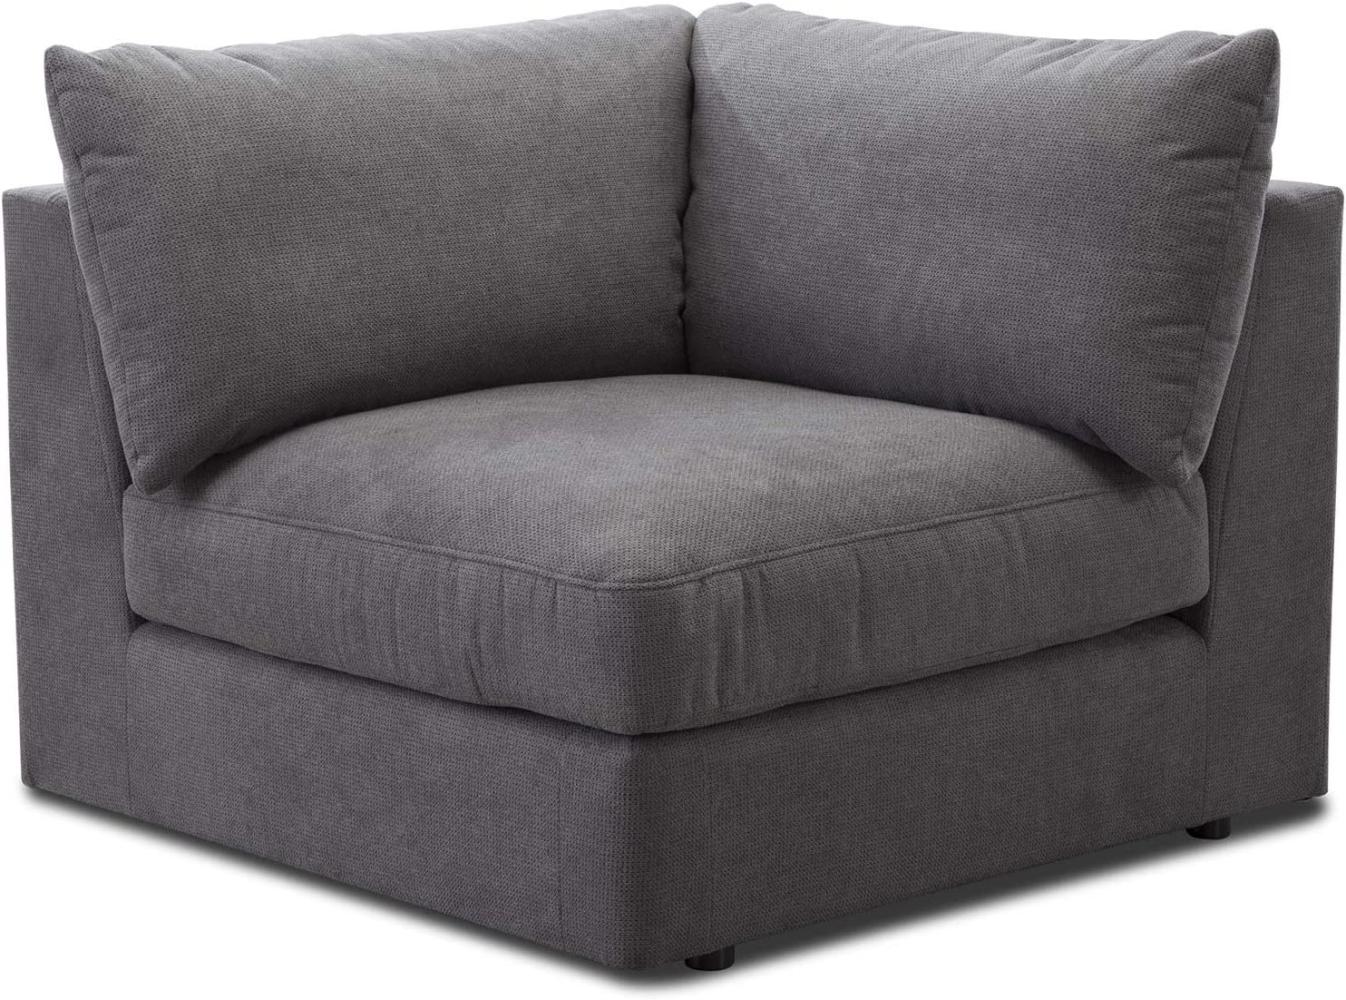 CAVADORE Sofa-Modul "Fiona" Spitzecke / Ecke für Wohnlandschaft oder XXL-Sessel / 107 x 90 x 107 / Webstoff grau Bild 1